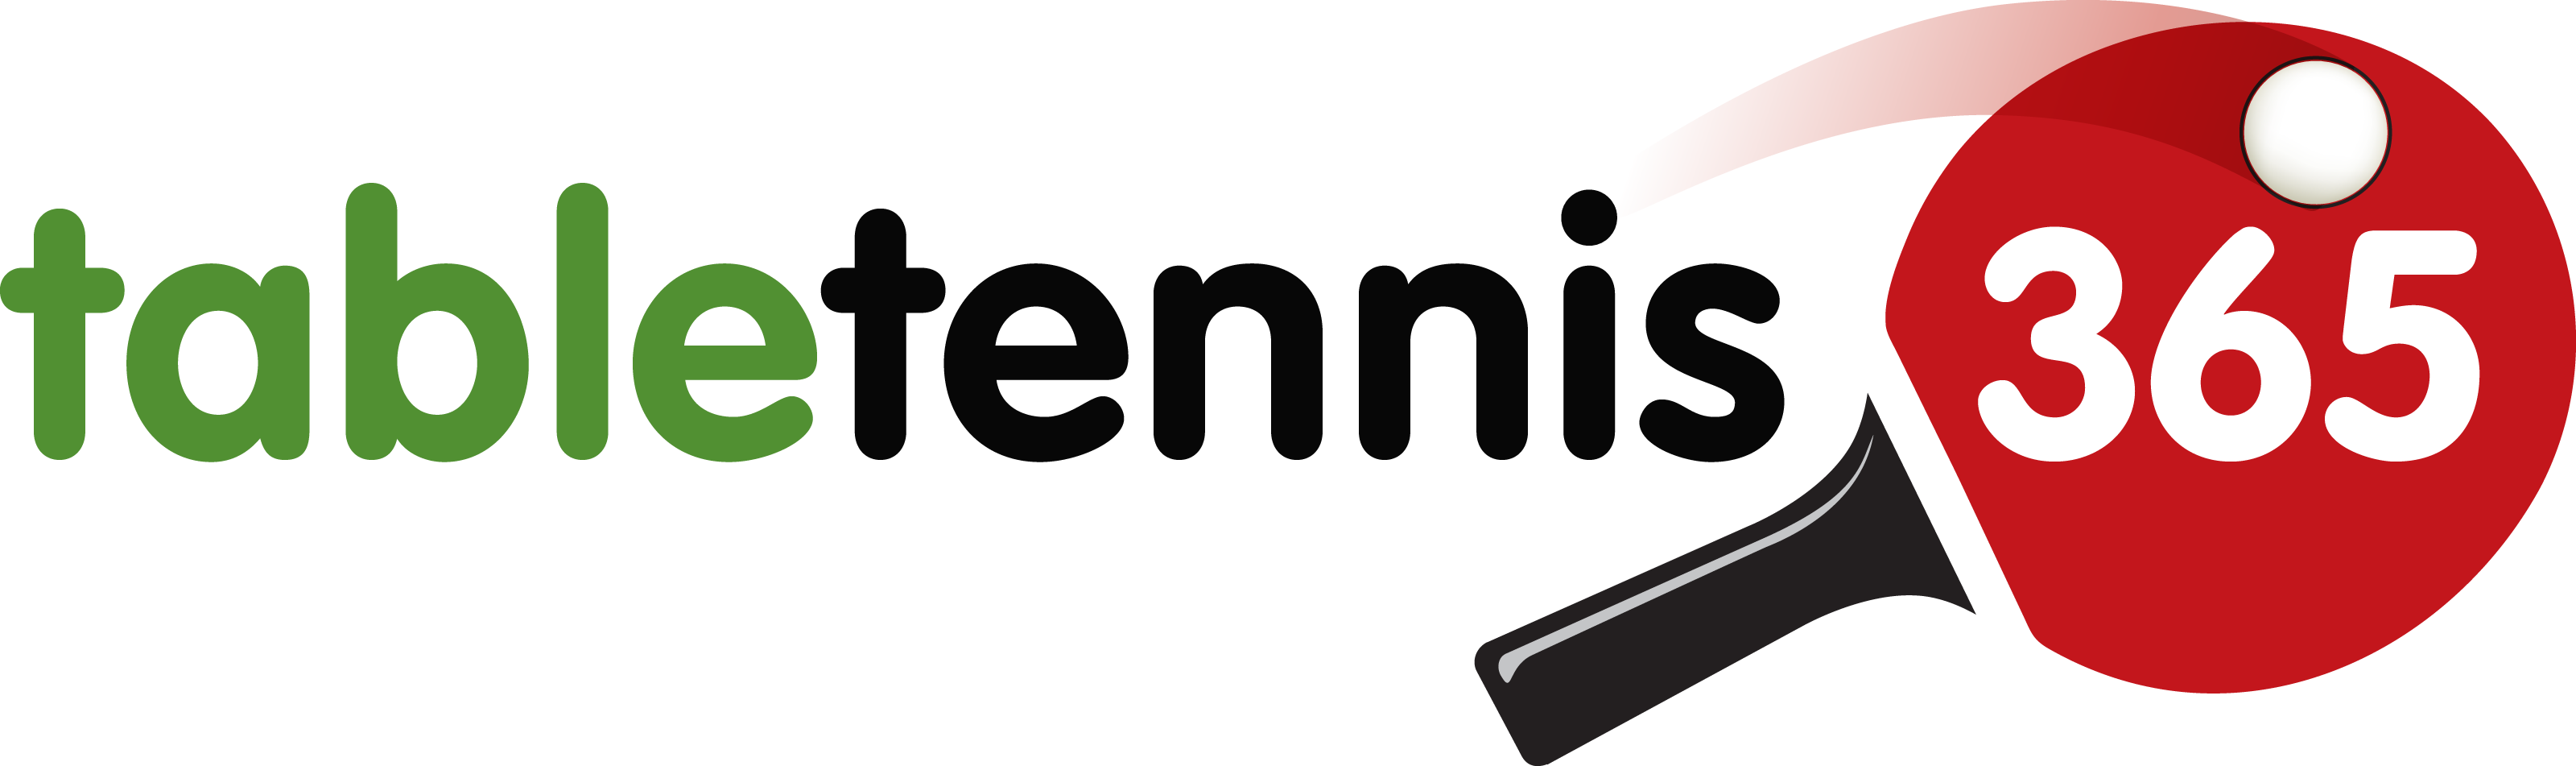 Table Tennis 365 Logo - Table Tennis Logo Design (3200x951)